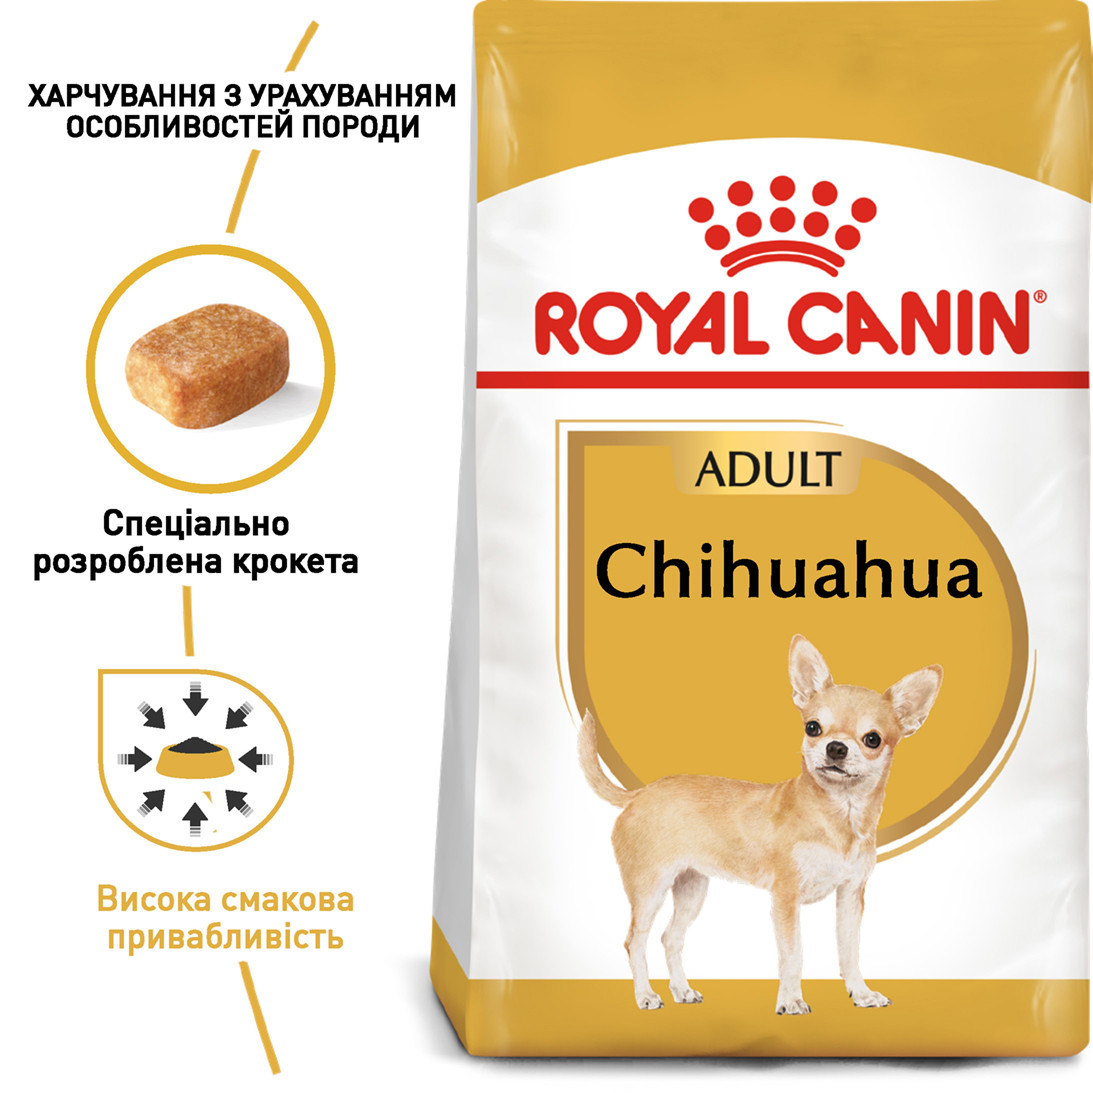 Royal Canin Chihuahua 28 Adult сухий корм для дорослих собак породи Чихуахуа від 8 місяців, 1.5КГ, фото 1